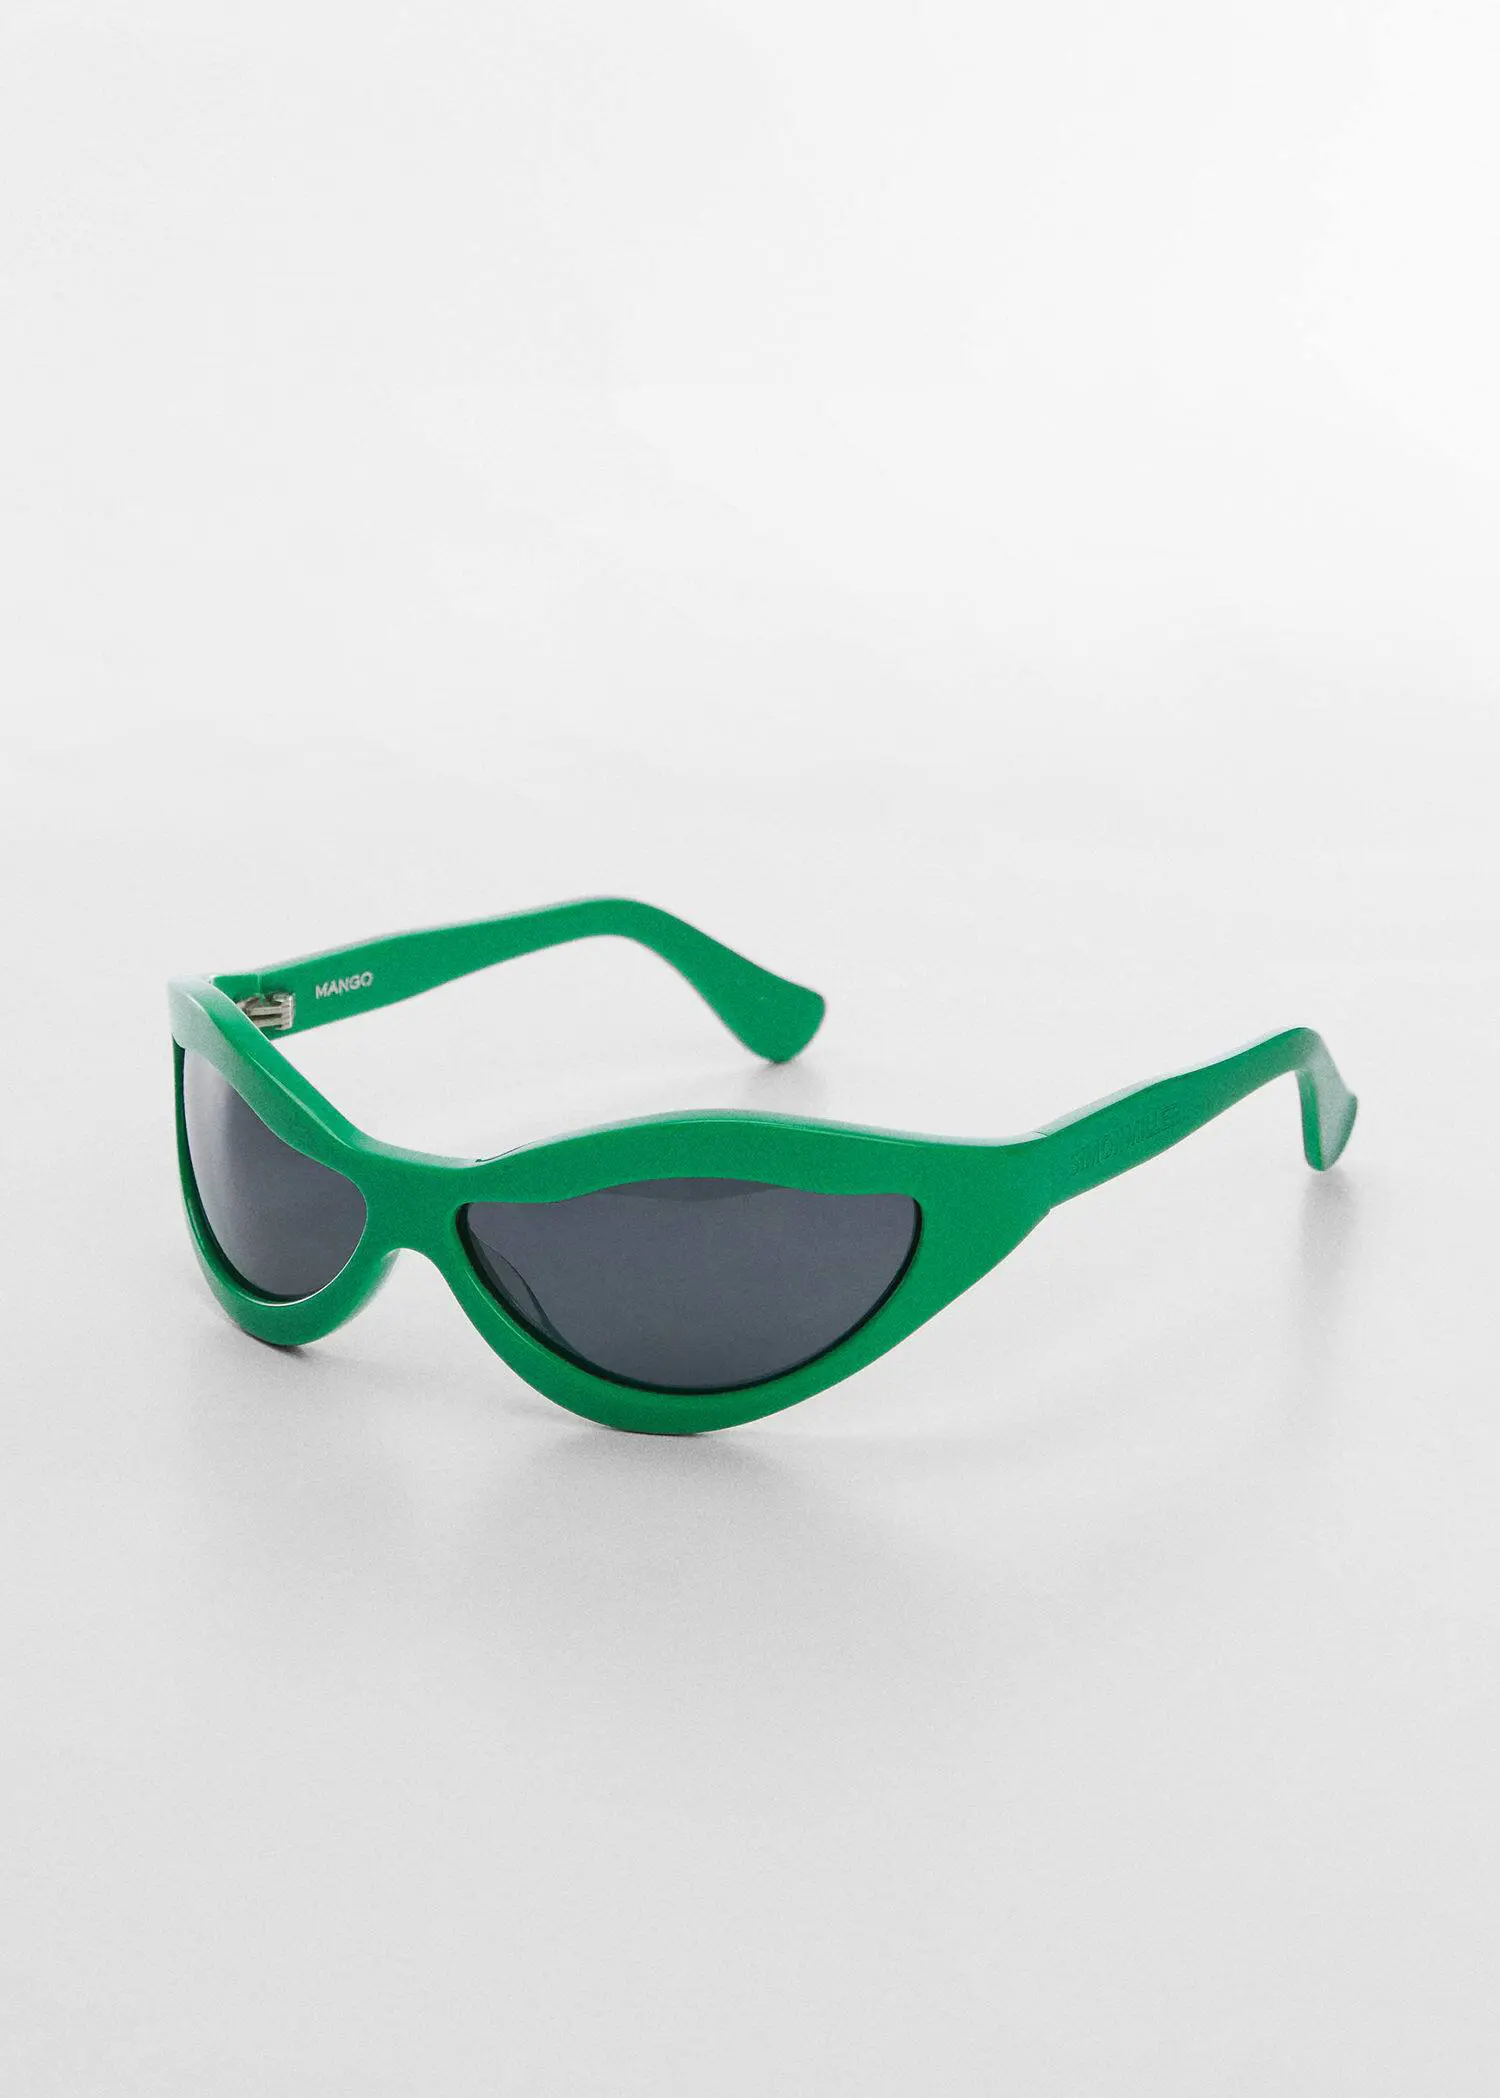 Mango Sonnenbrille mit ungleichmäßiger Glasform. 3